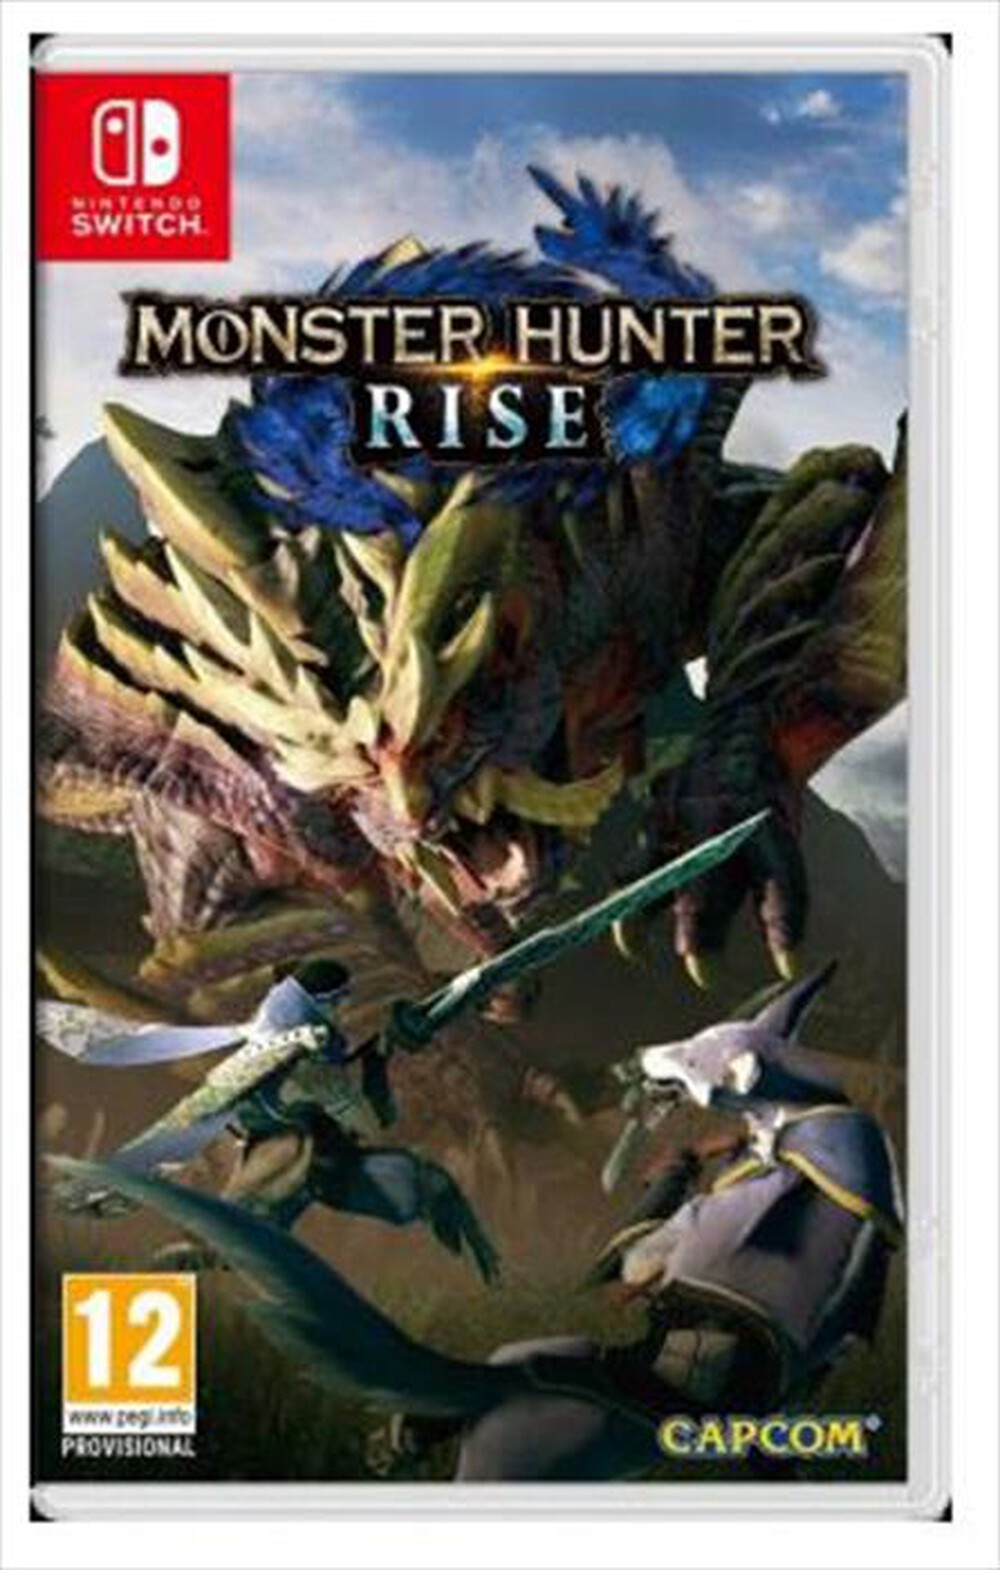 "NINTENDO - Monster Hunter Rise"